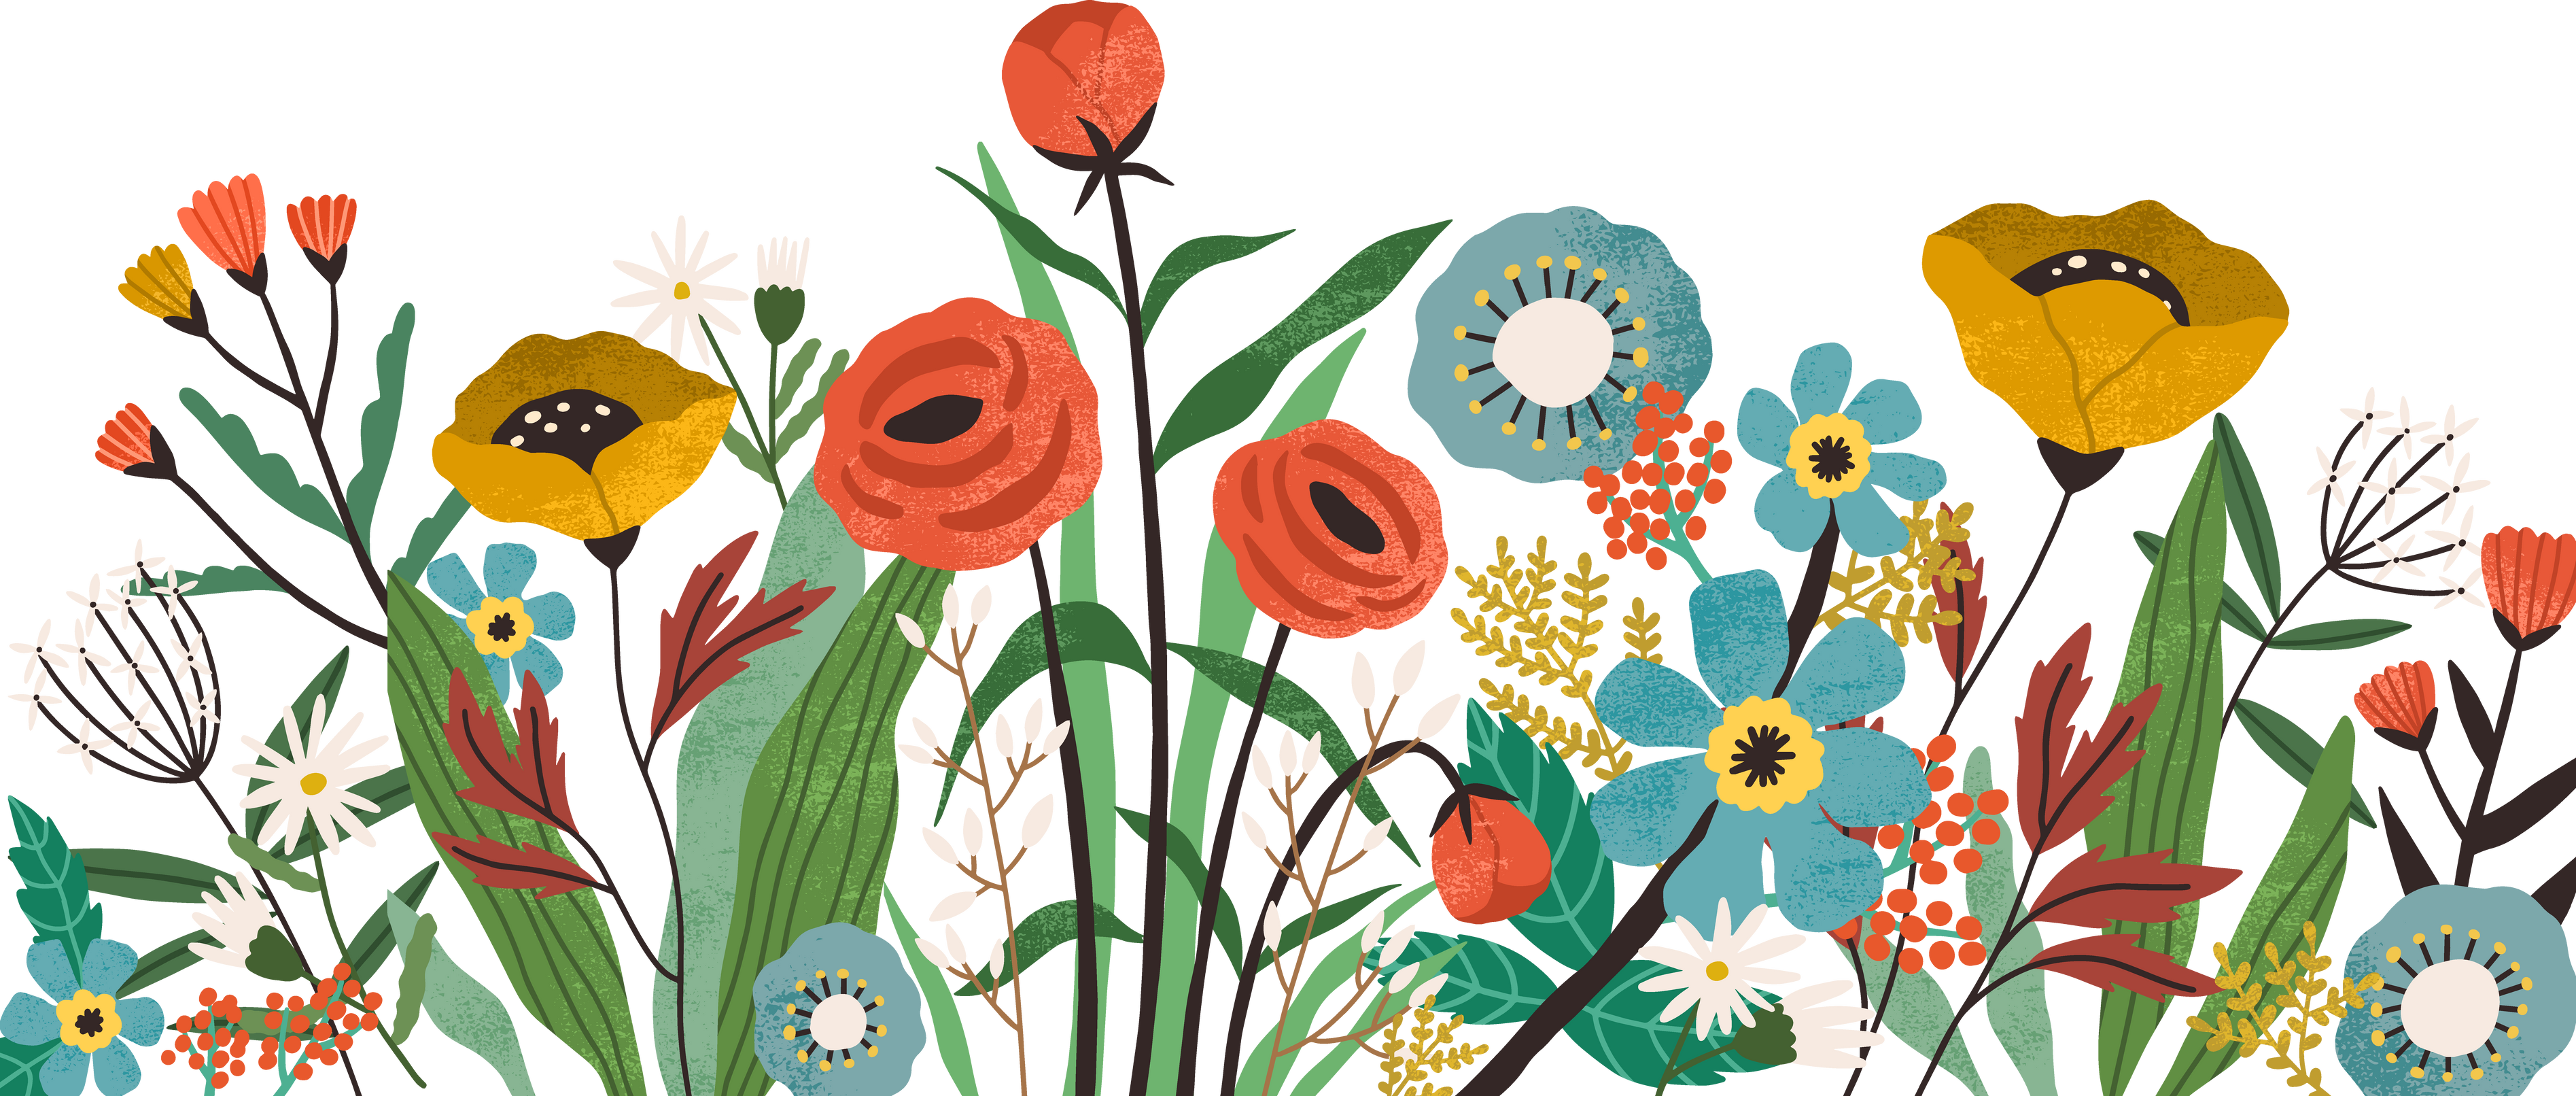 Flower Garden Illustration